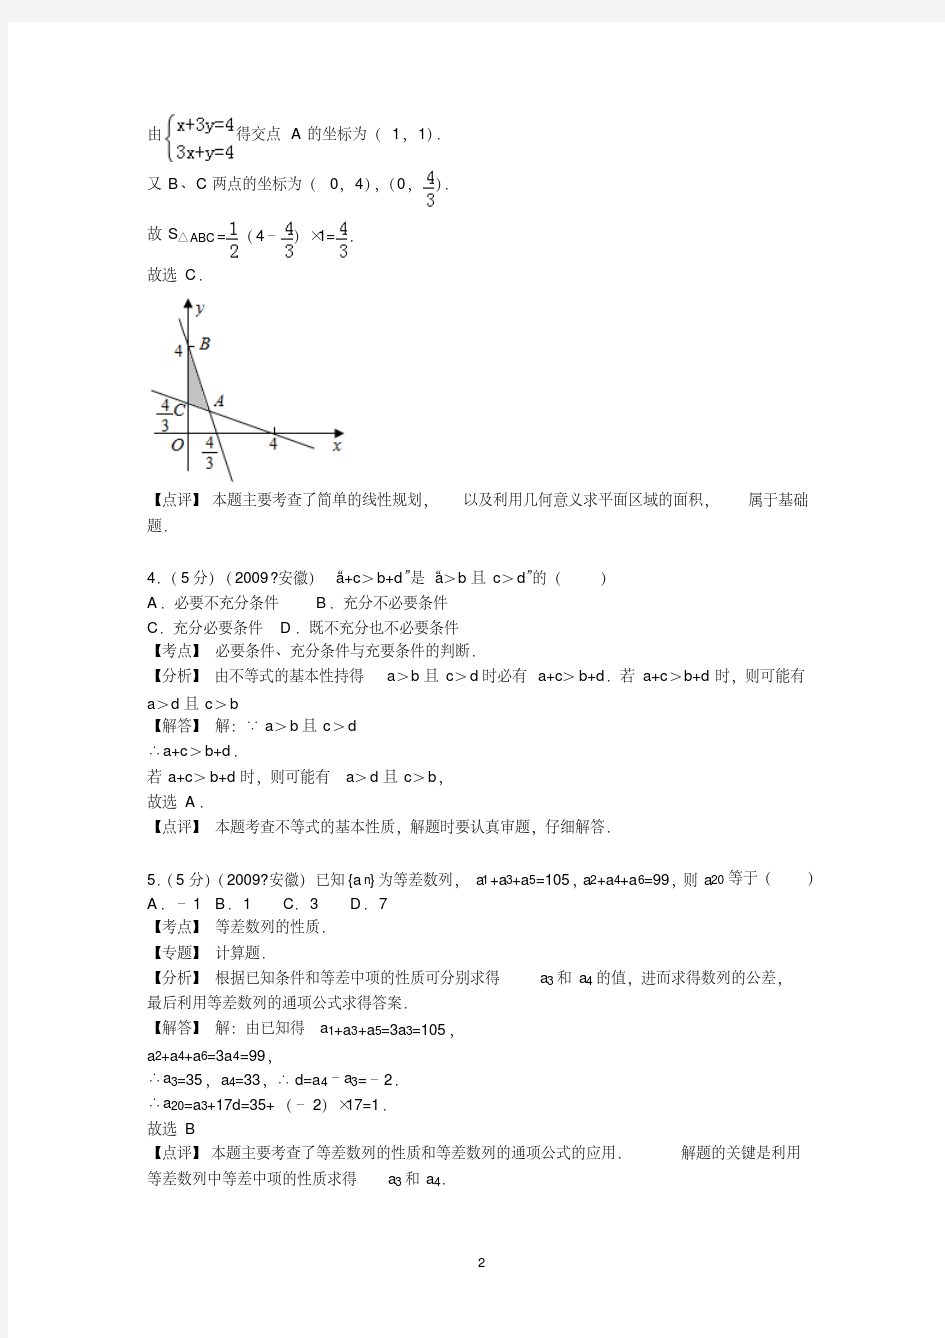 2009年安徽省高考数学试卷(文科)答案与解析-精选.pdf